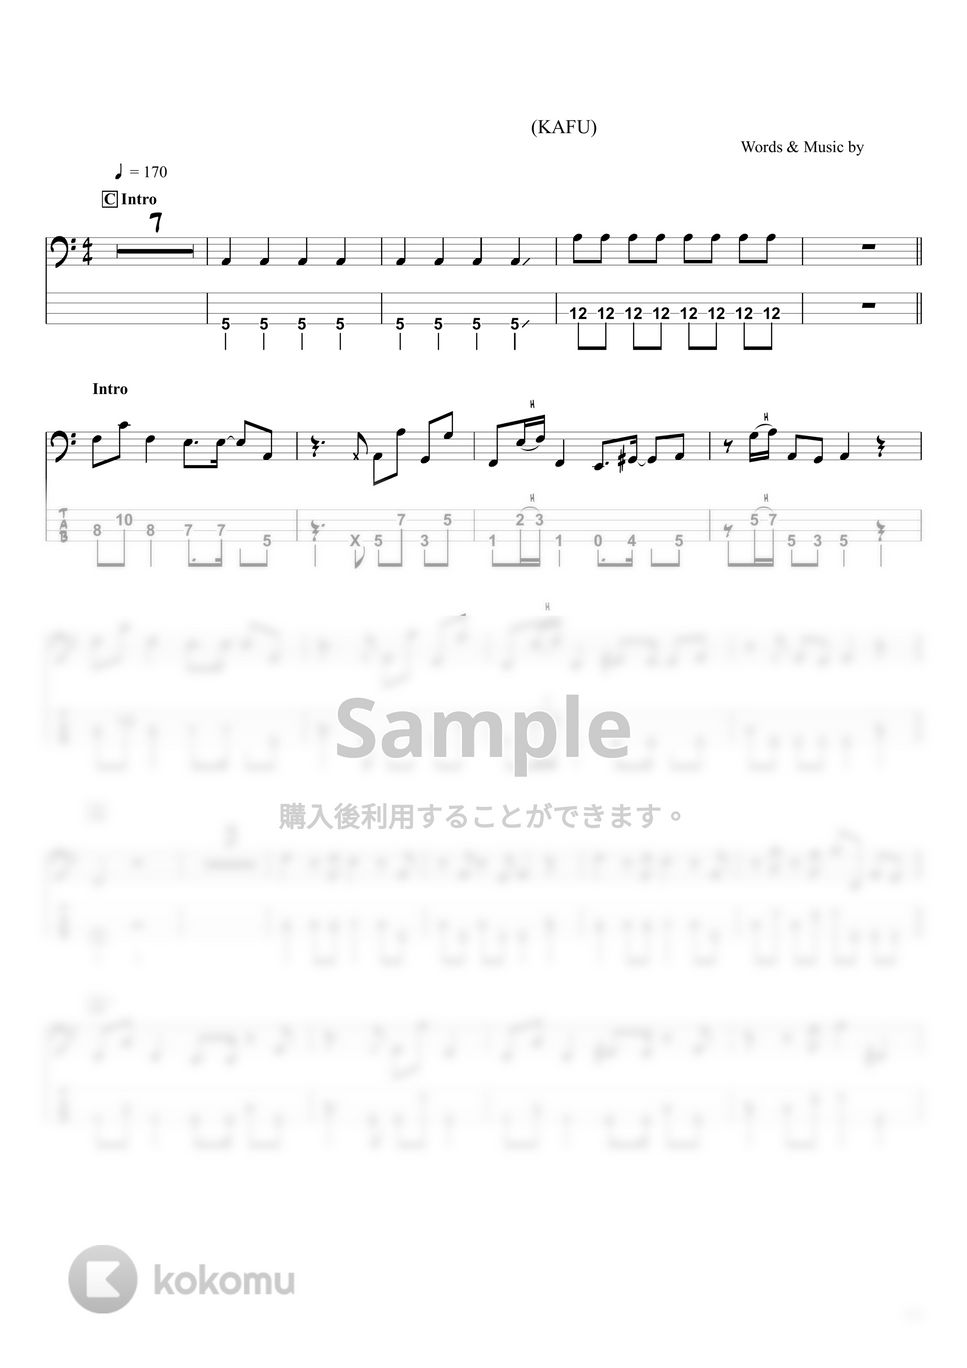 ツミキ - フォニイ (ベースTAB譜☆4弦ベース対応) by swbass